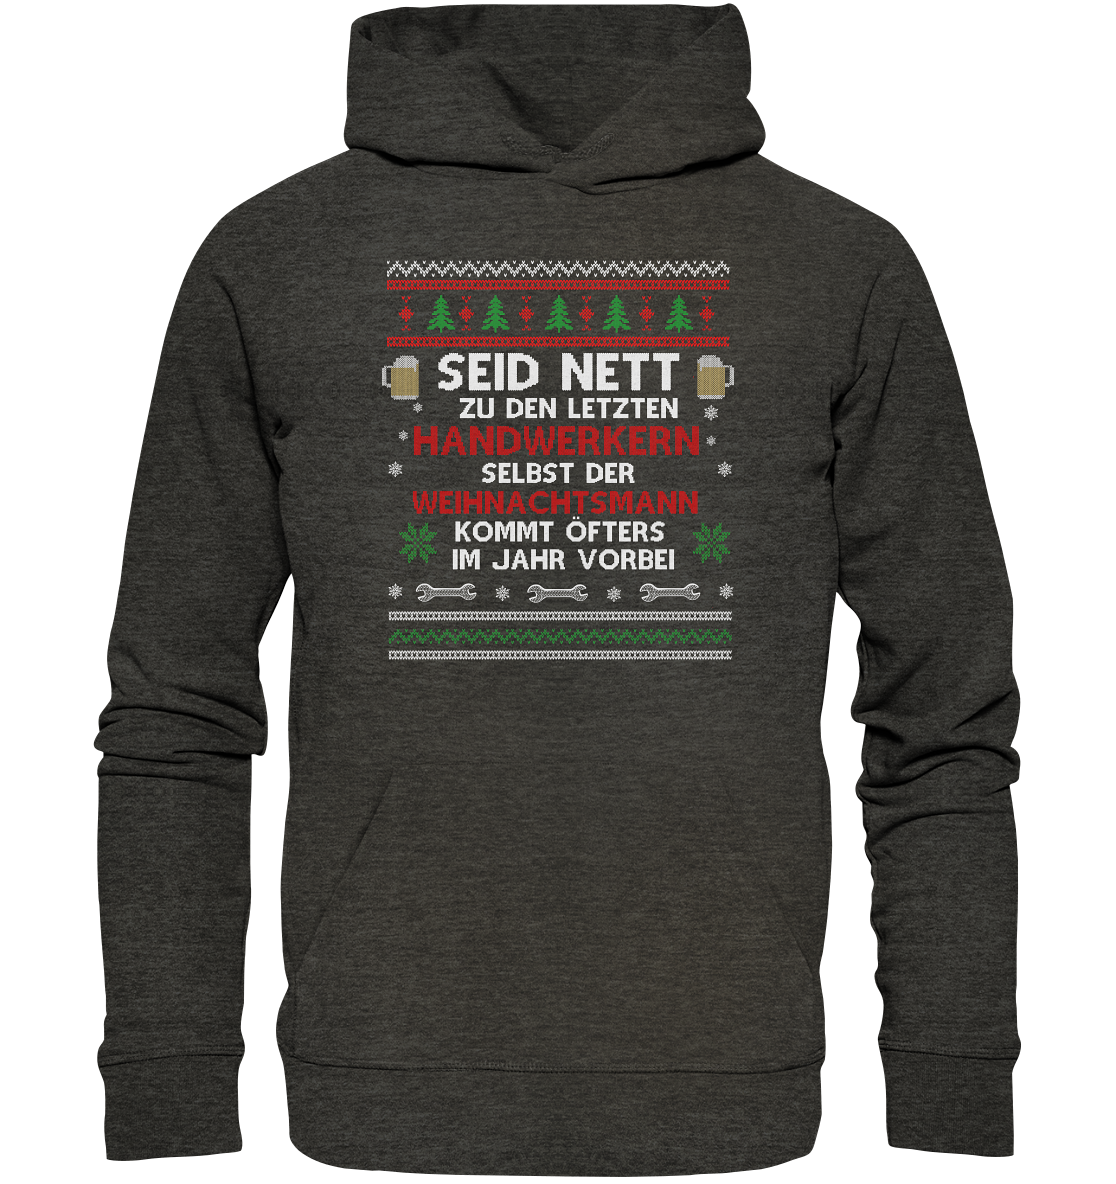 Seid nett zu den letzten Handwerkern, selbst der Weihnachtsmann kommt öfters im Jahr vorbei - Ugly Sweatshirt - Organic Hoodie